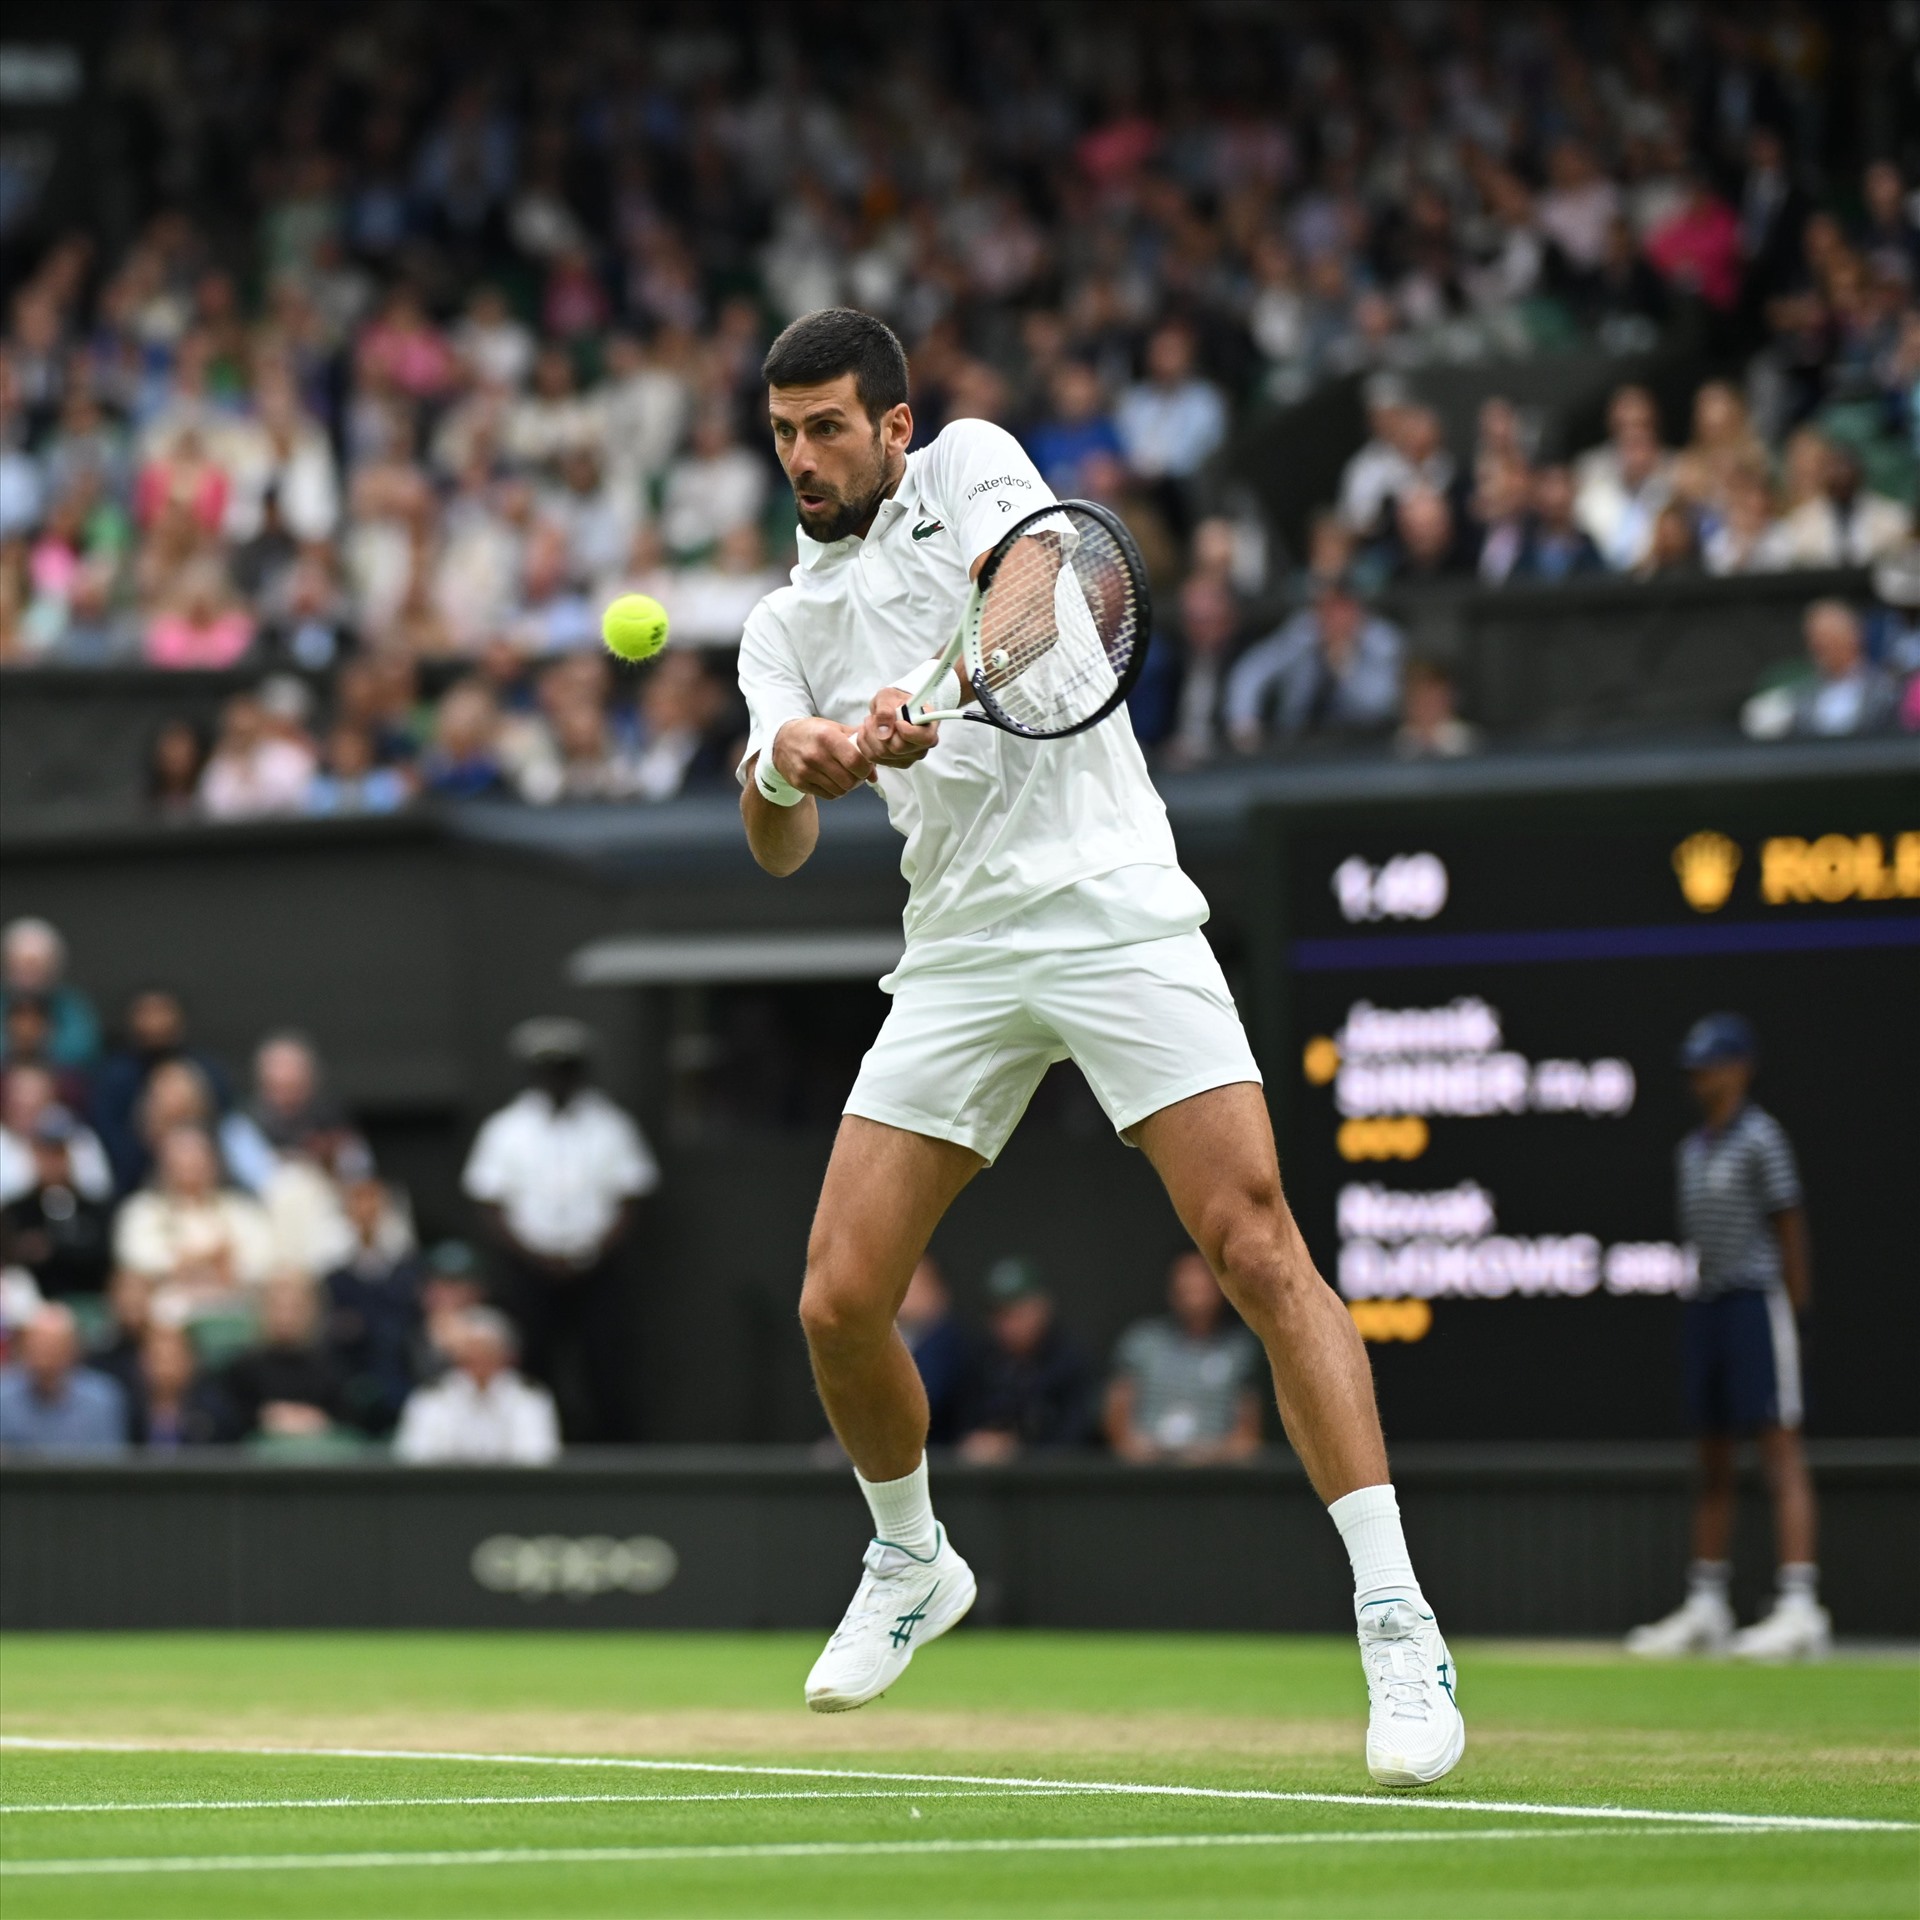 Djokovic vẫn đang là “bức tường thành khó khoan phá“. Ảnh: Wimbledon